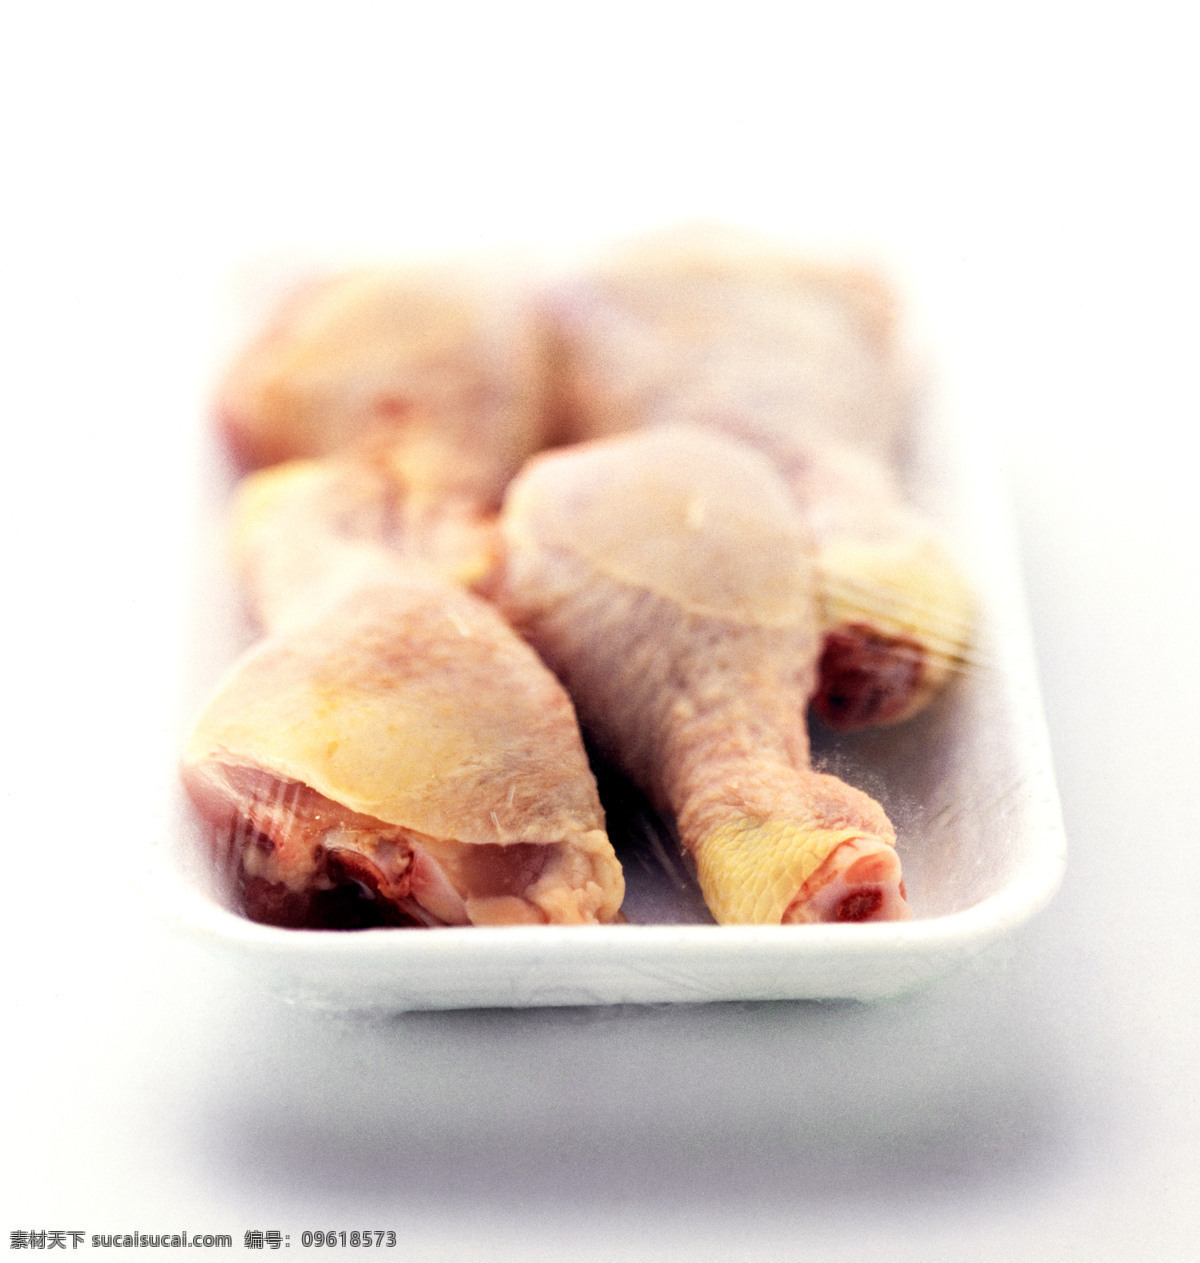 鸡腿图片素材 鸡肉 鸡腿 肉类食材 食材原料 餐饮美食